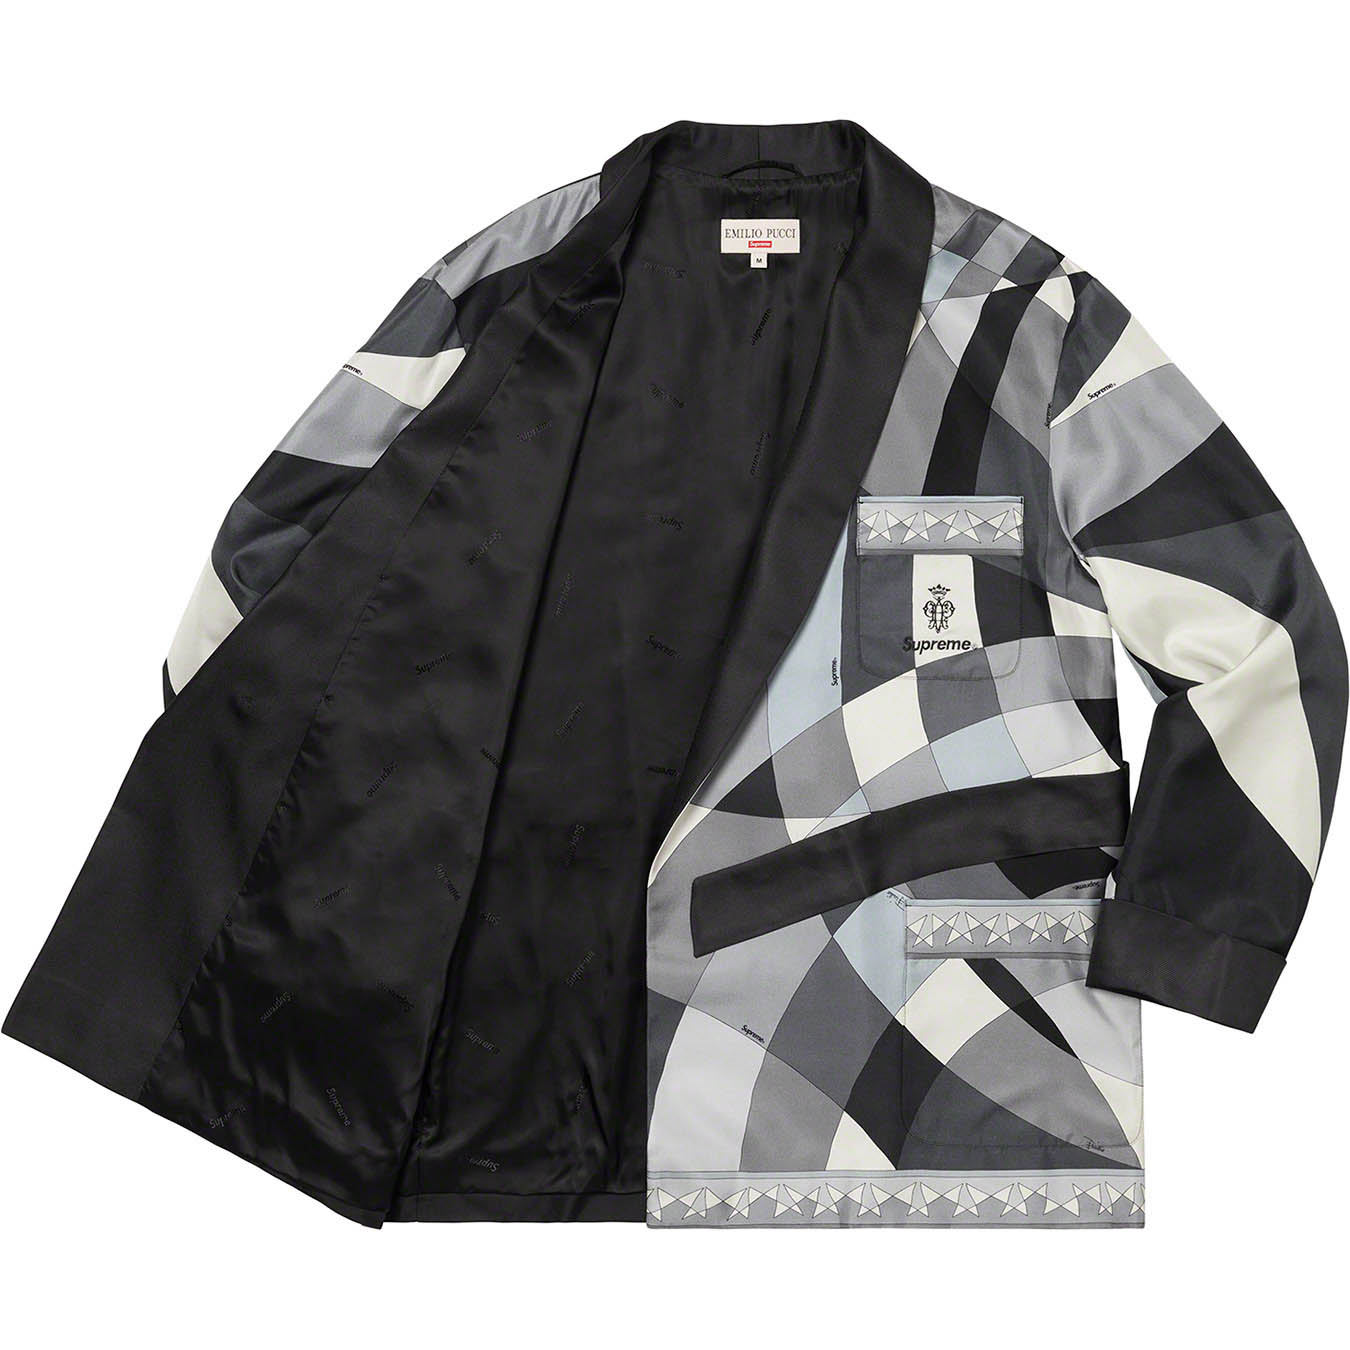 Supreme®/Emilio Pucci® Silk Smoking Jacket